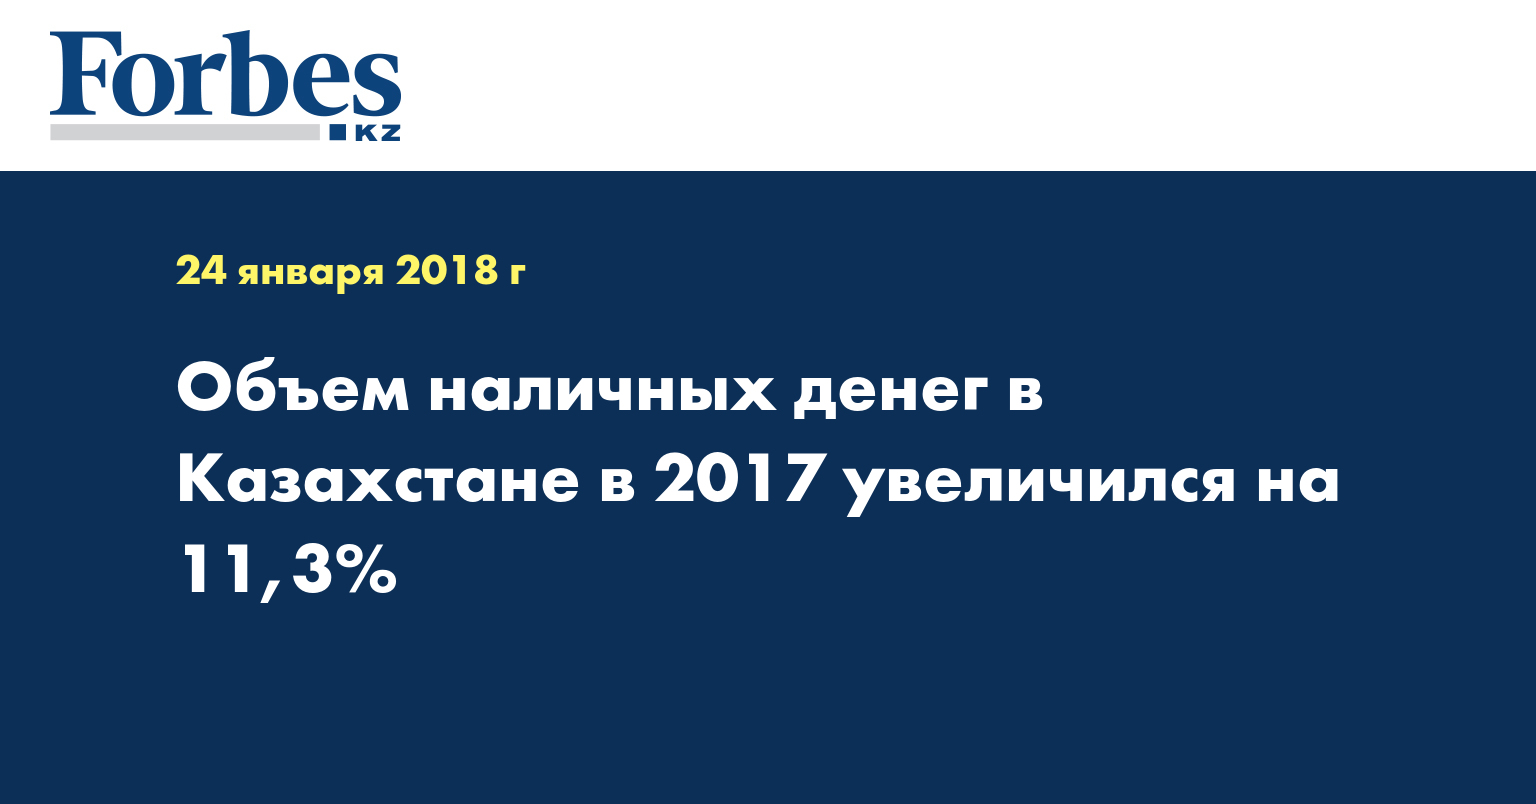 Объем наличных денег в Казахстане в 2017 увеличился на 11,3%